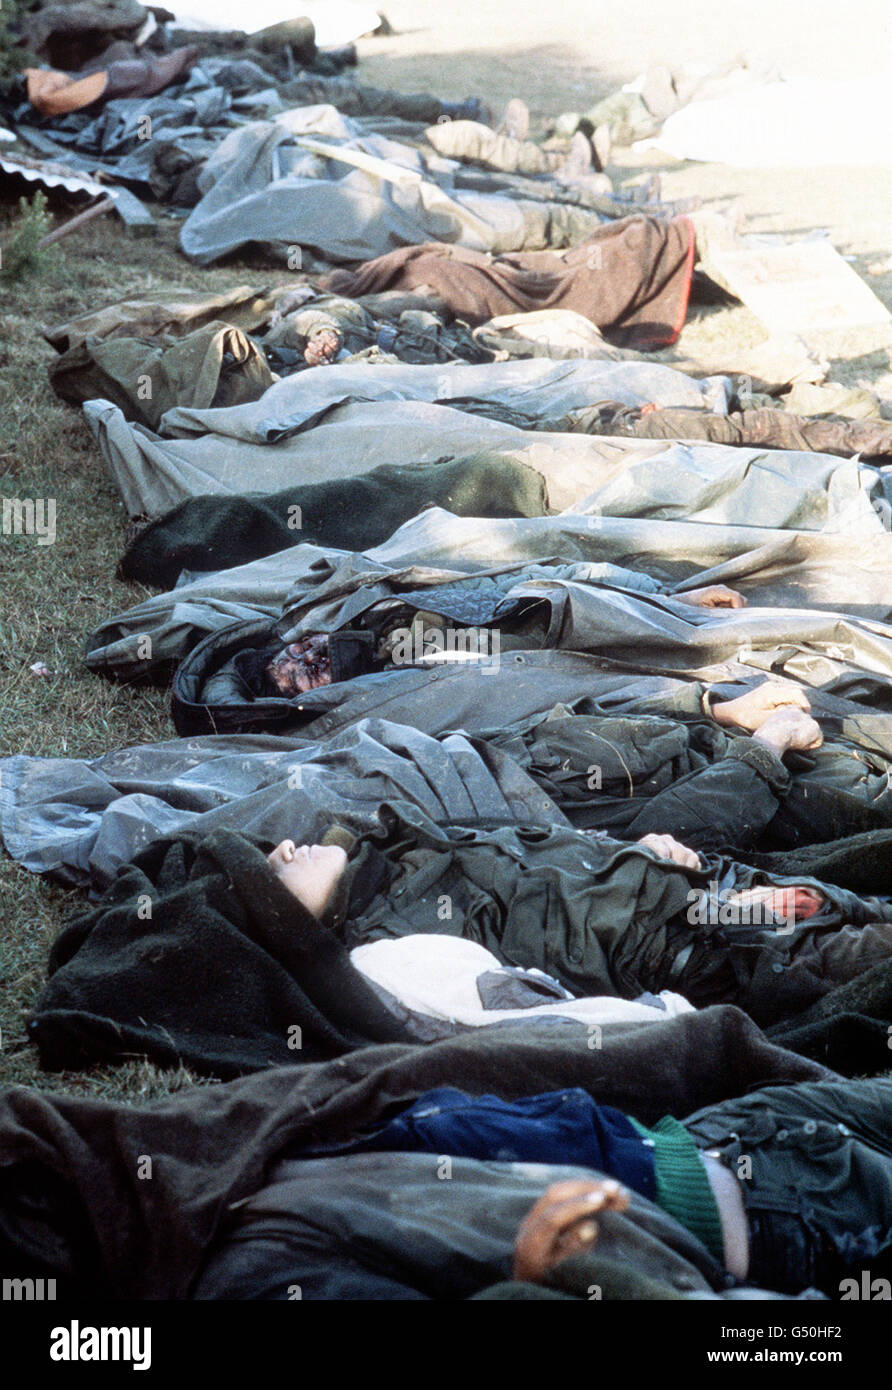 LA GUERRE DES MALOUINES de 1982 : les troupes argentines qui sont mortes dans la bataille de Goose Green dans l'attente d'un transport à Port Darwin pour inhumation.Goose Green et Port Darwin ont été repris par le 2 Para (2e Bataillon du Régiment de parachutistes) le 28 mai 1982.*25/03/02 troupes argentines mortes dans la bataille de Goose Green sur les îles Falkland, en attente de transport à Port Darwin pour inhumation.Le 20e anniversaire de l'invasion des Malouines par les forces argentines aura lieu le 2 avril 2002. Banque D'Images